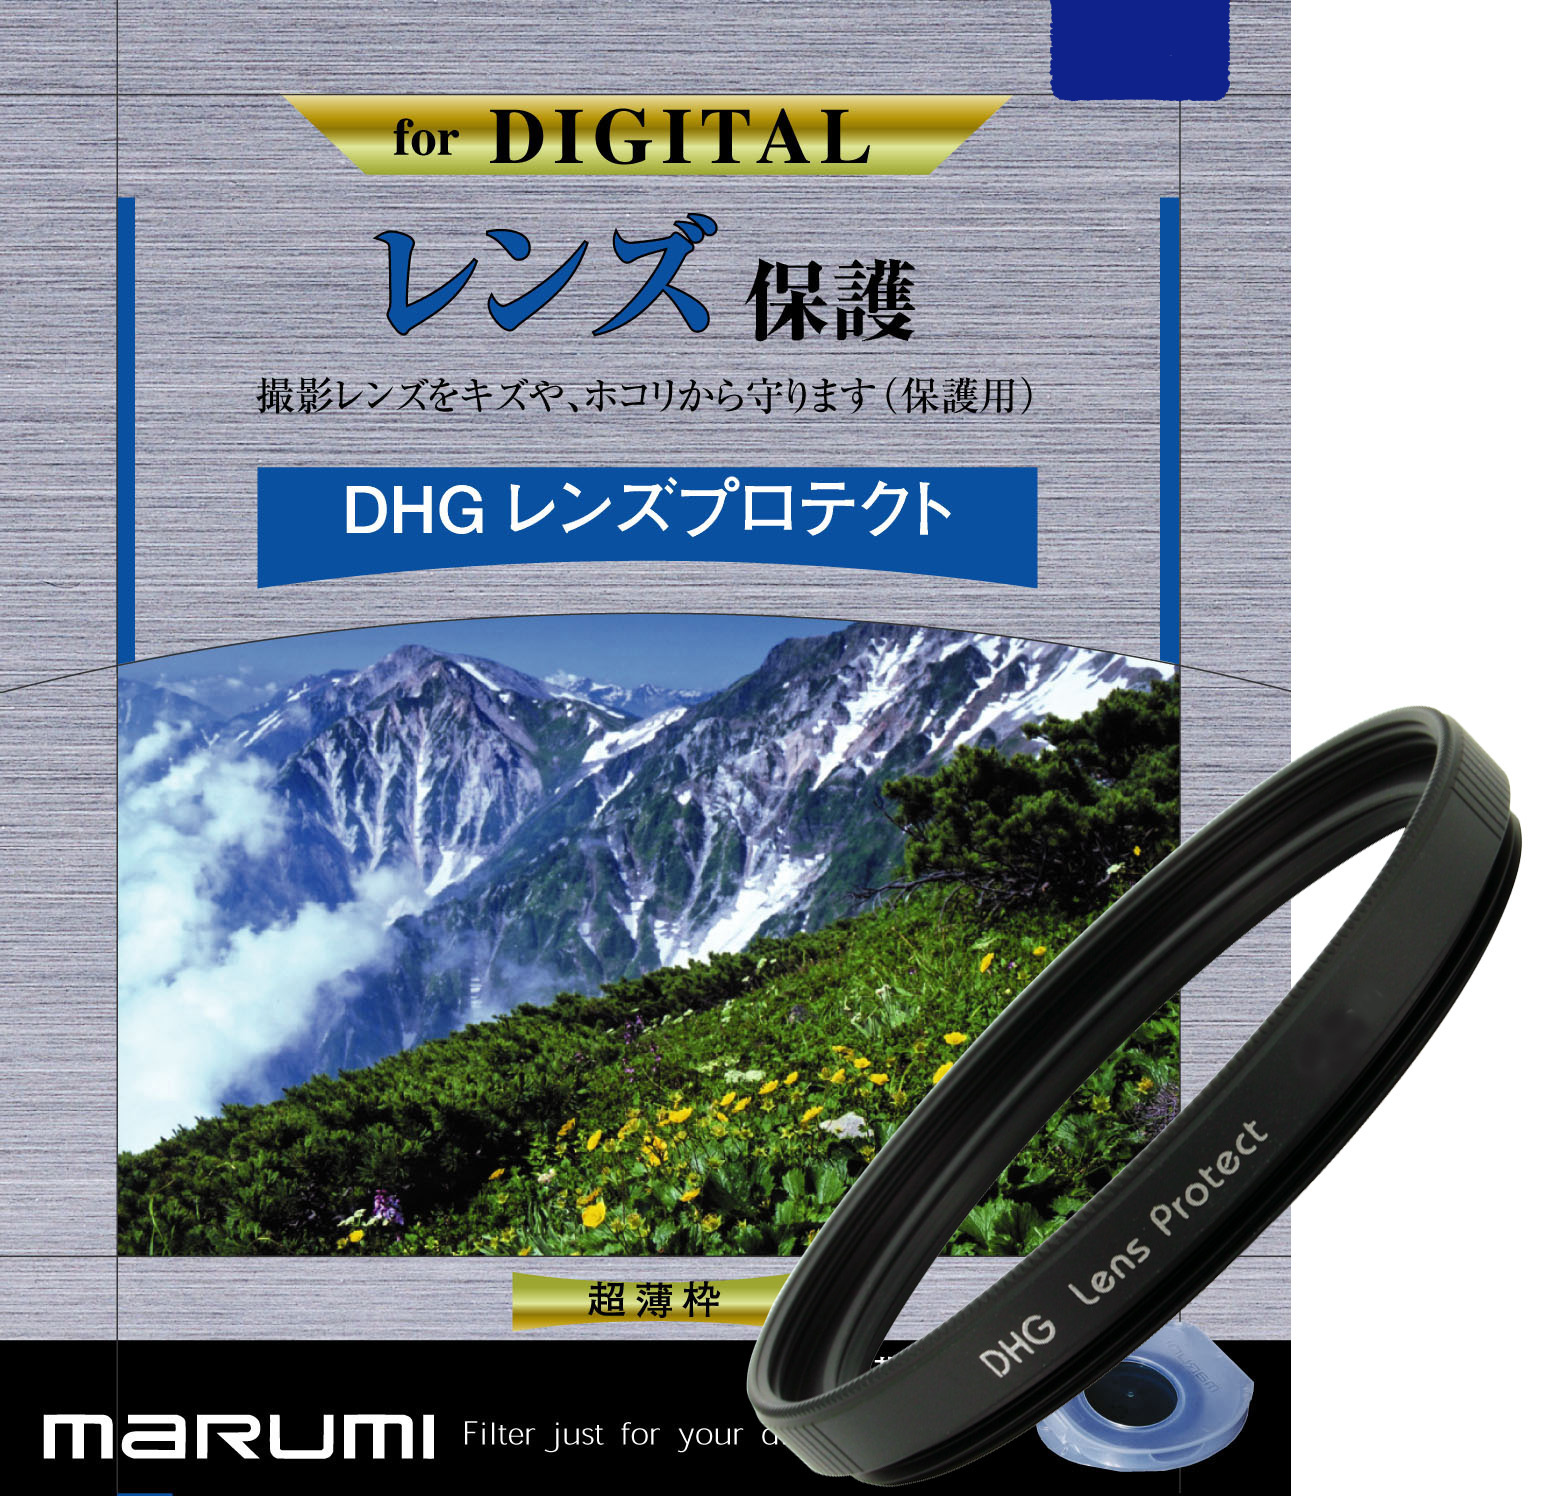 マルミ  DHG レンズプロテクト 62mm [プロテクター] MARUMI